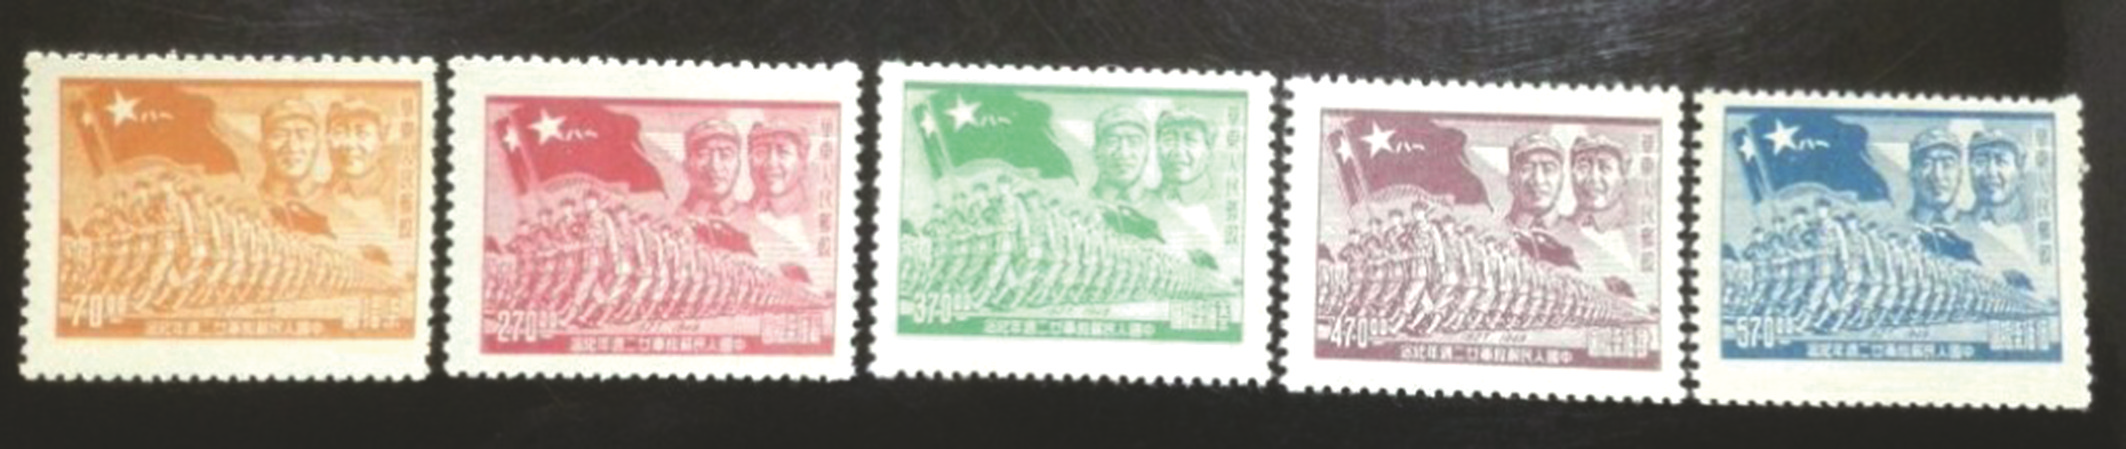 《中国人民解放军 廿二周年纪念》邮票 